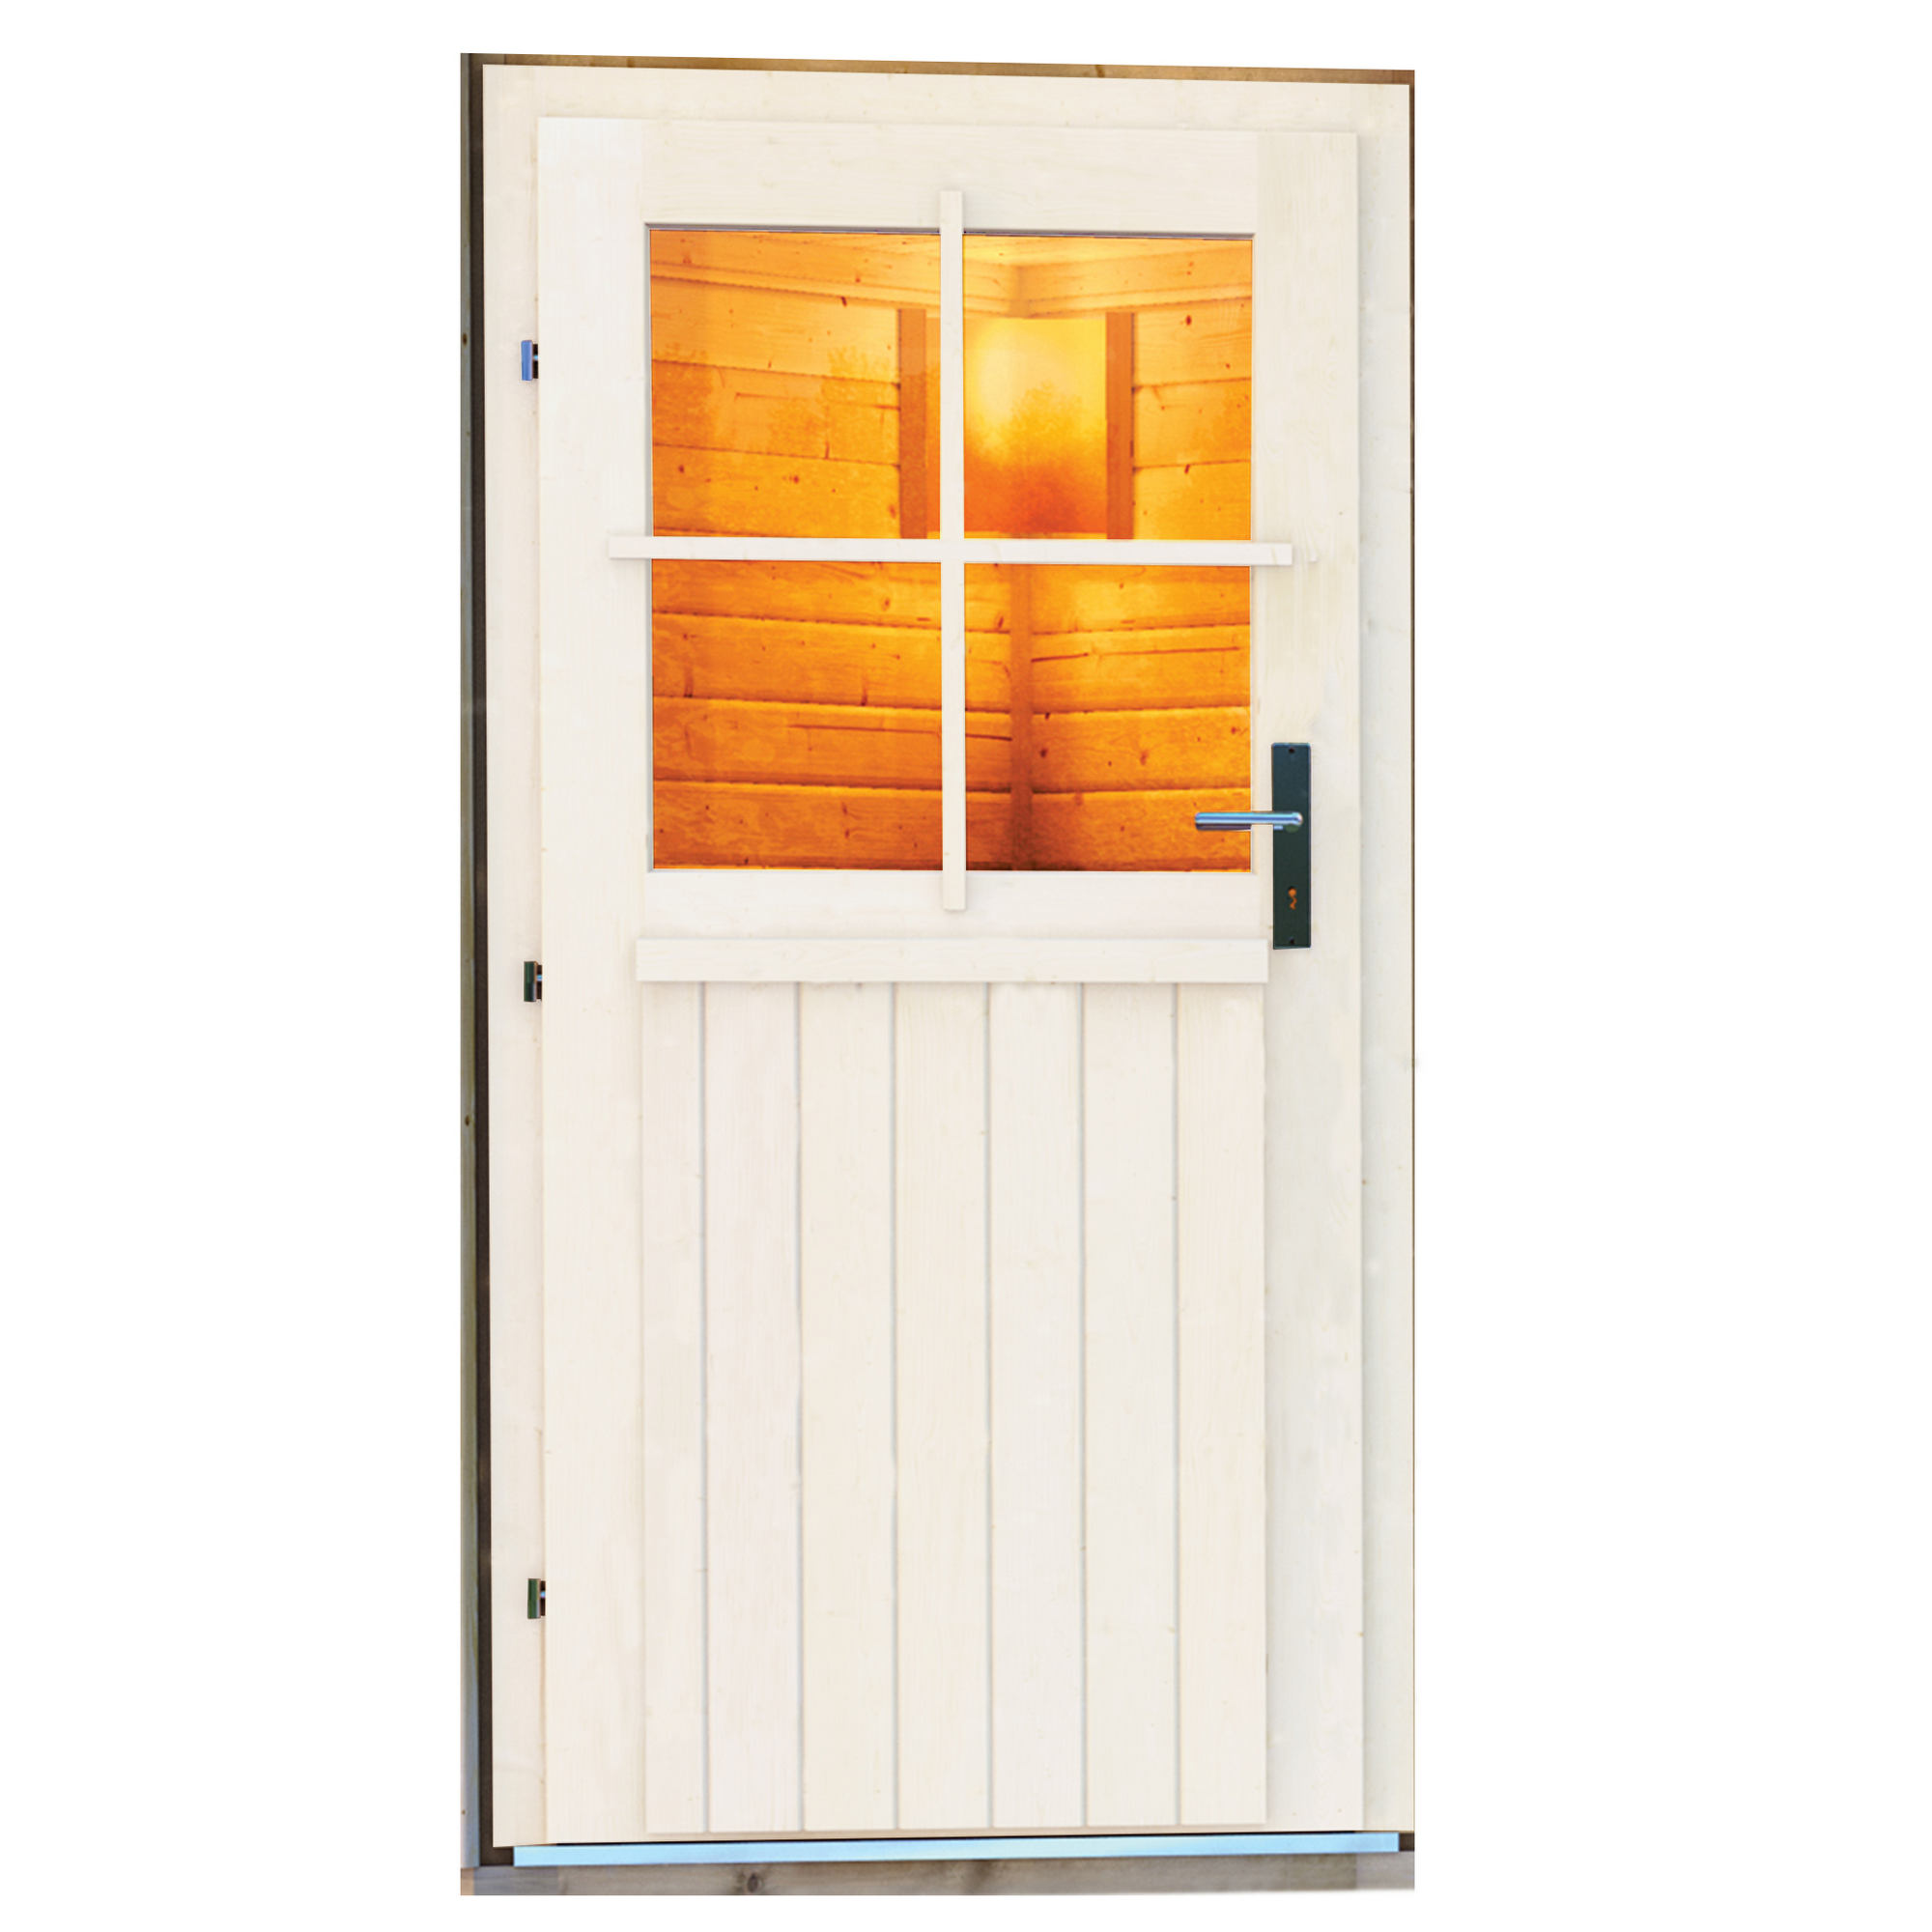 Saunahaus 'Skrollan 3' terragrau mit klassischer Tür mit Holzofen 396 x 231 x 227 cm + product picture